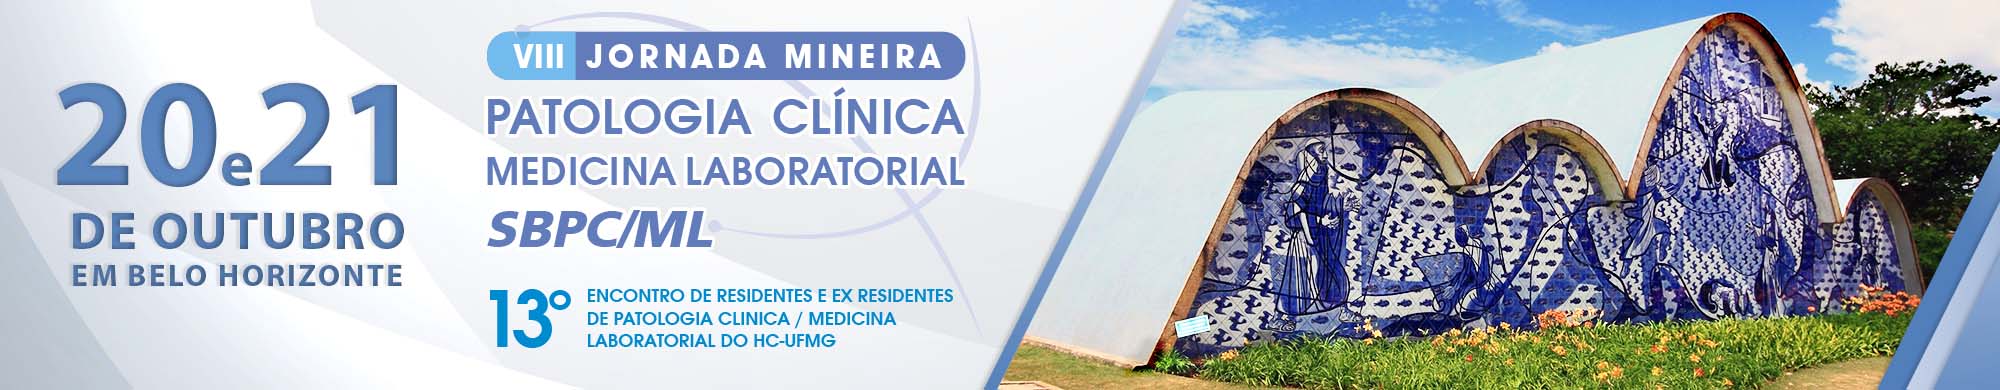 VIII Jornada Mineira e 13º Encontro de Residentes e Ex residentes de Patologia Clinica/Medicina Laboratorial